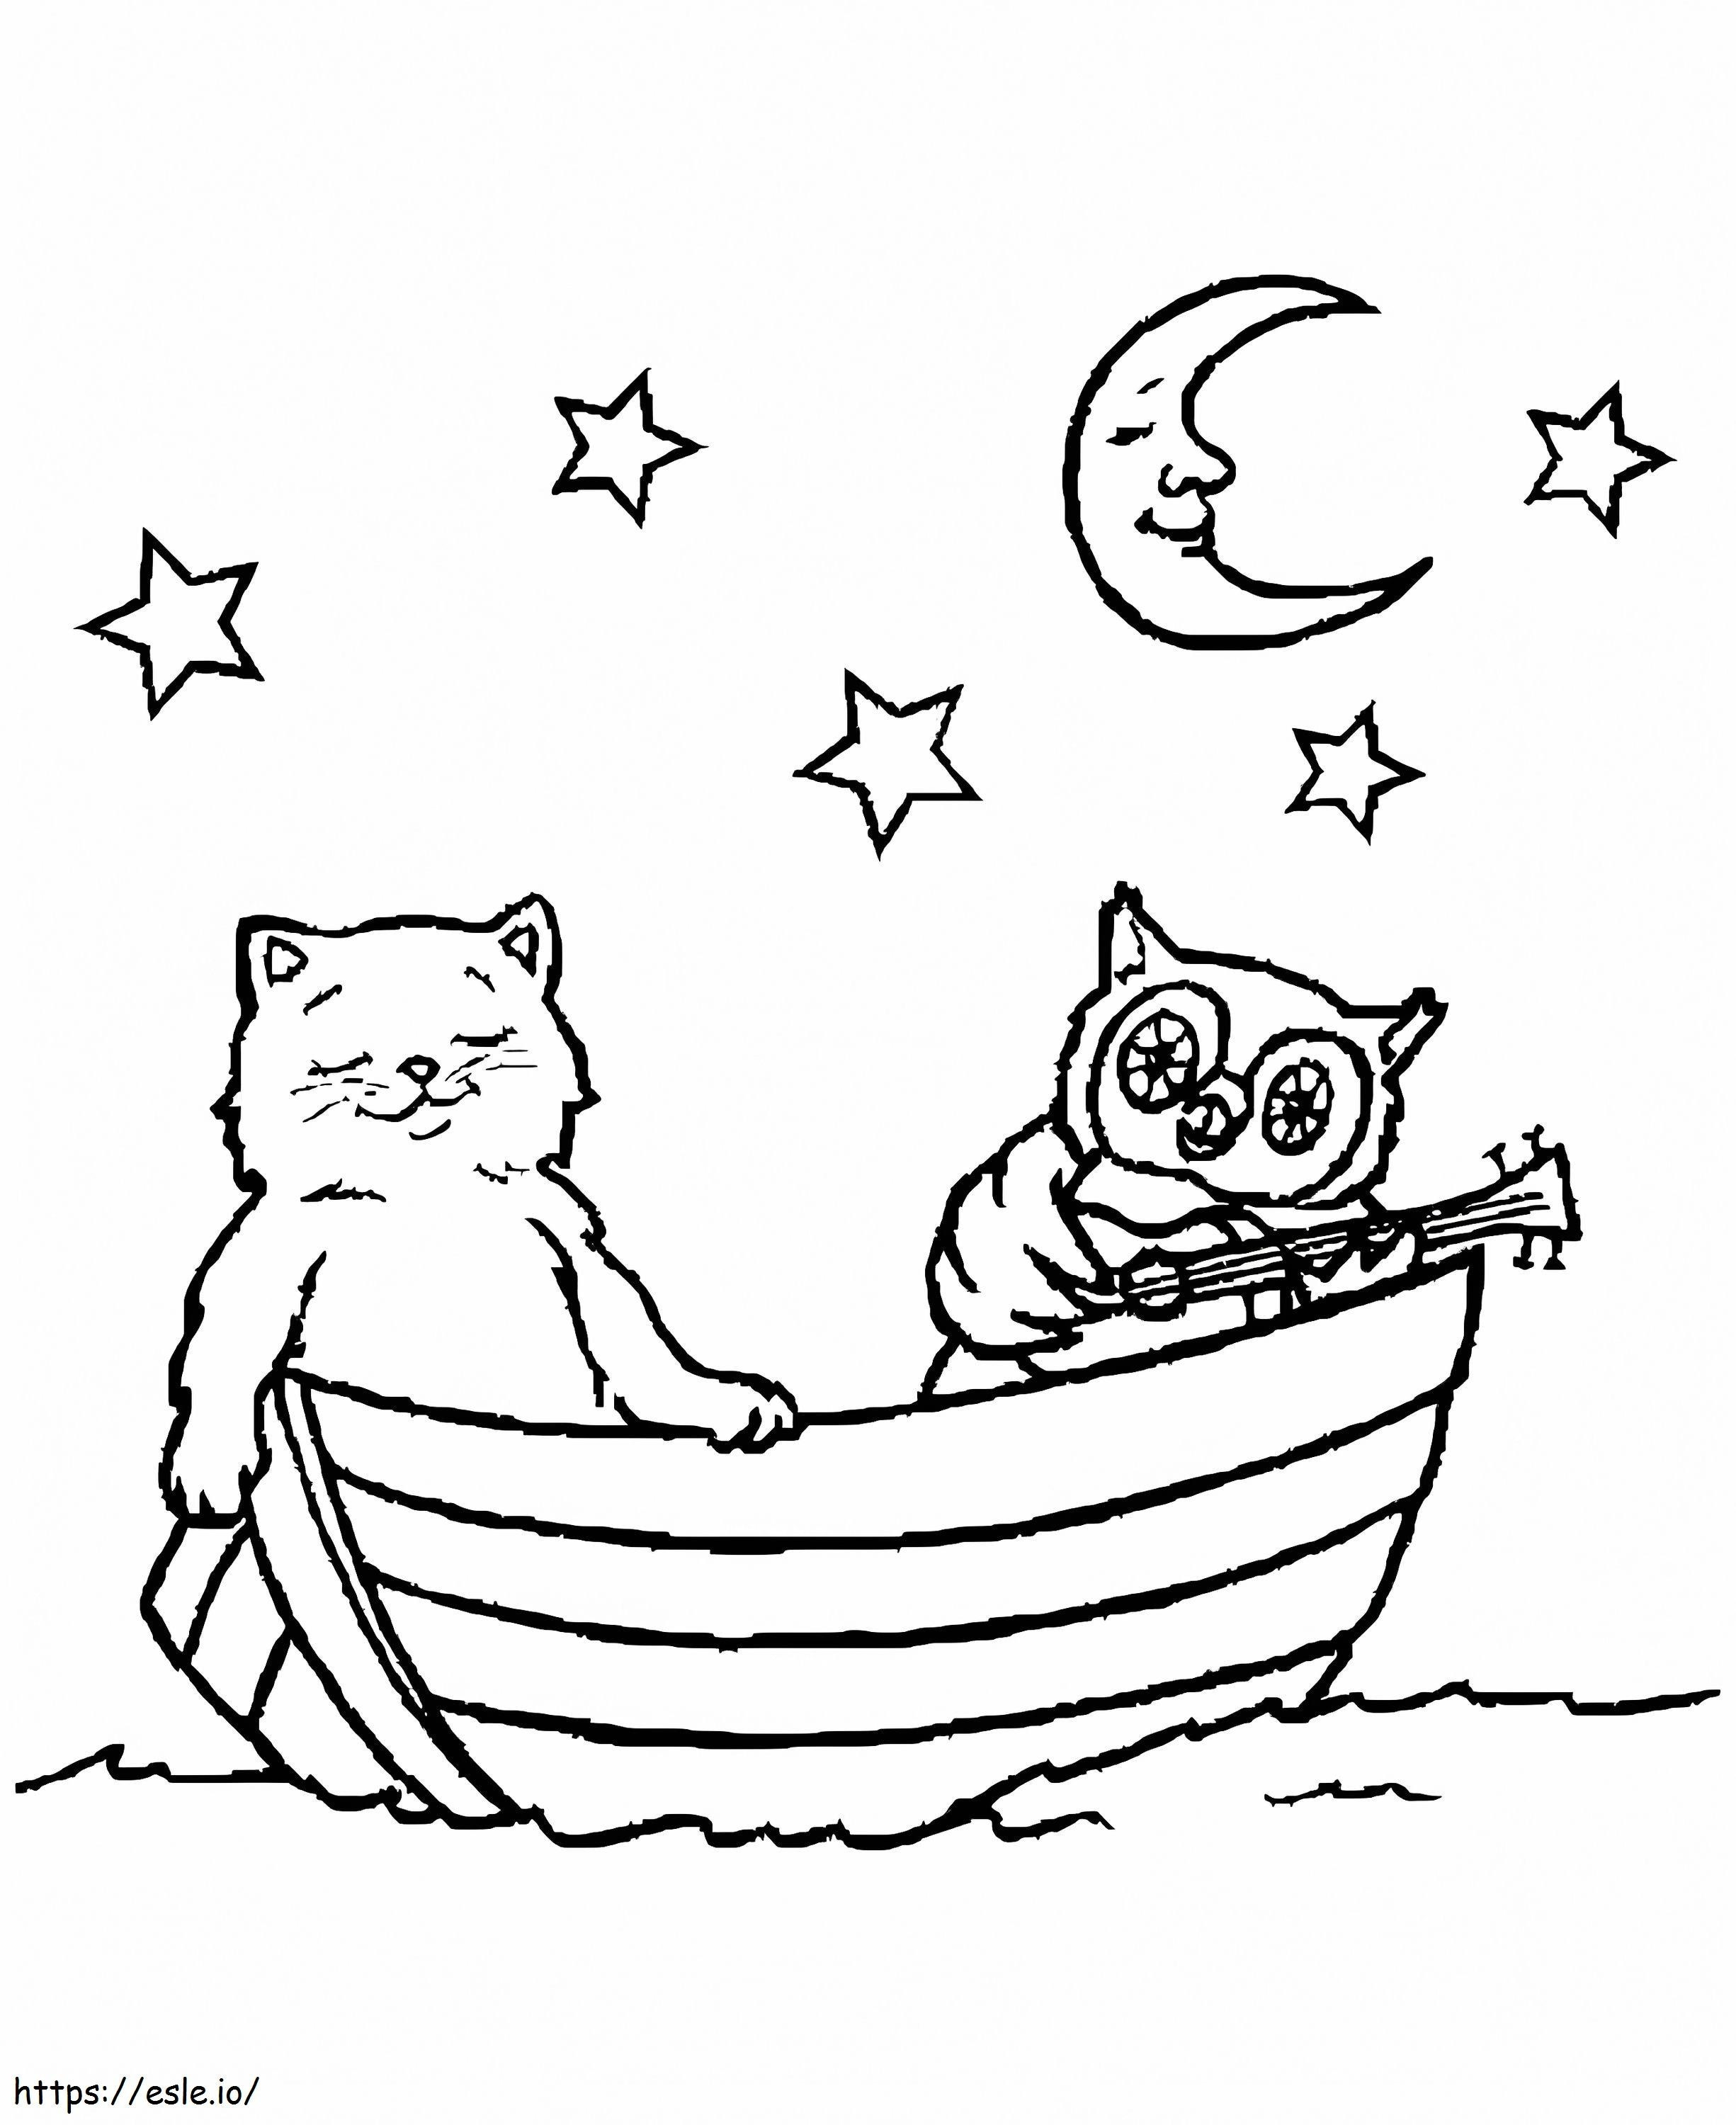 Katze und Eule auf Boot ausmalbilder